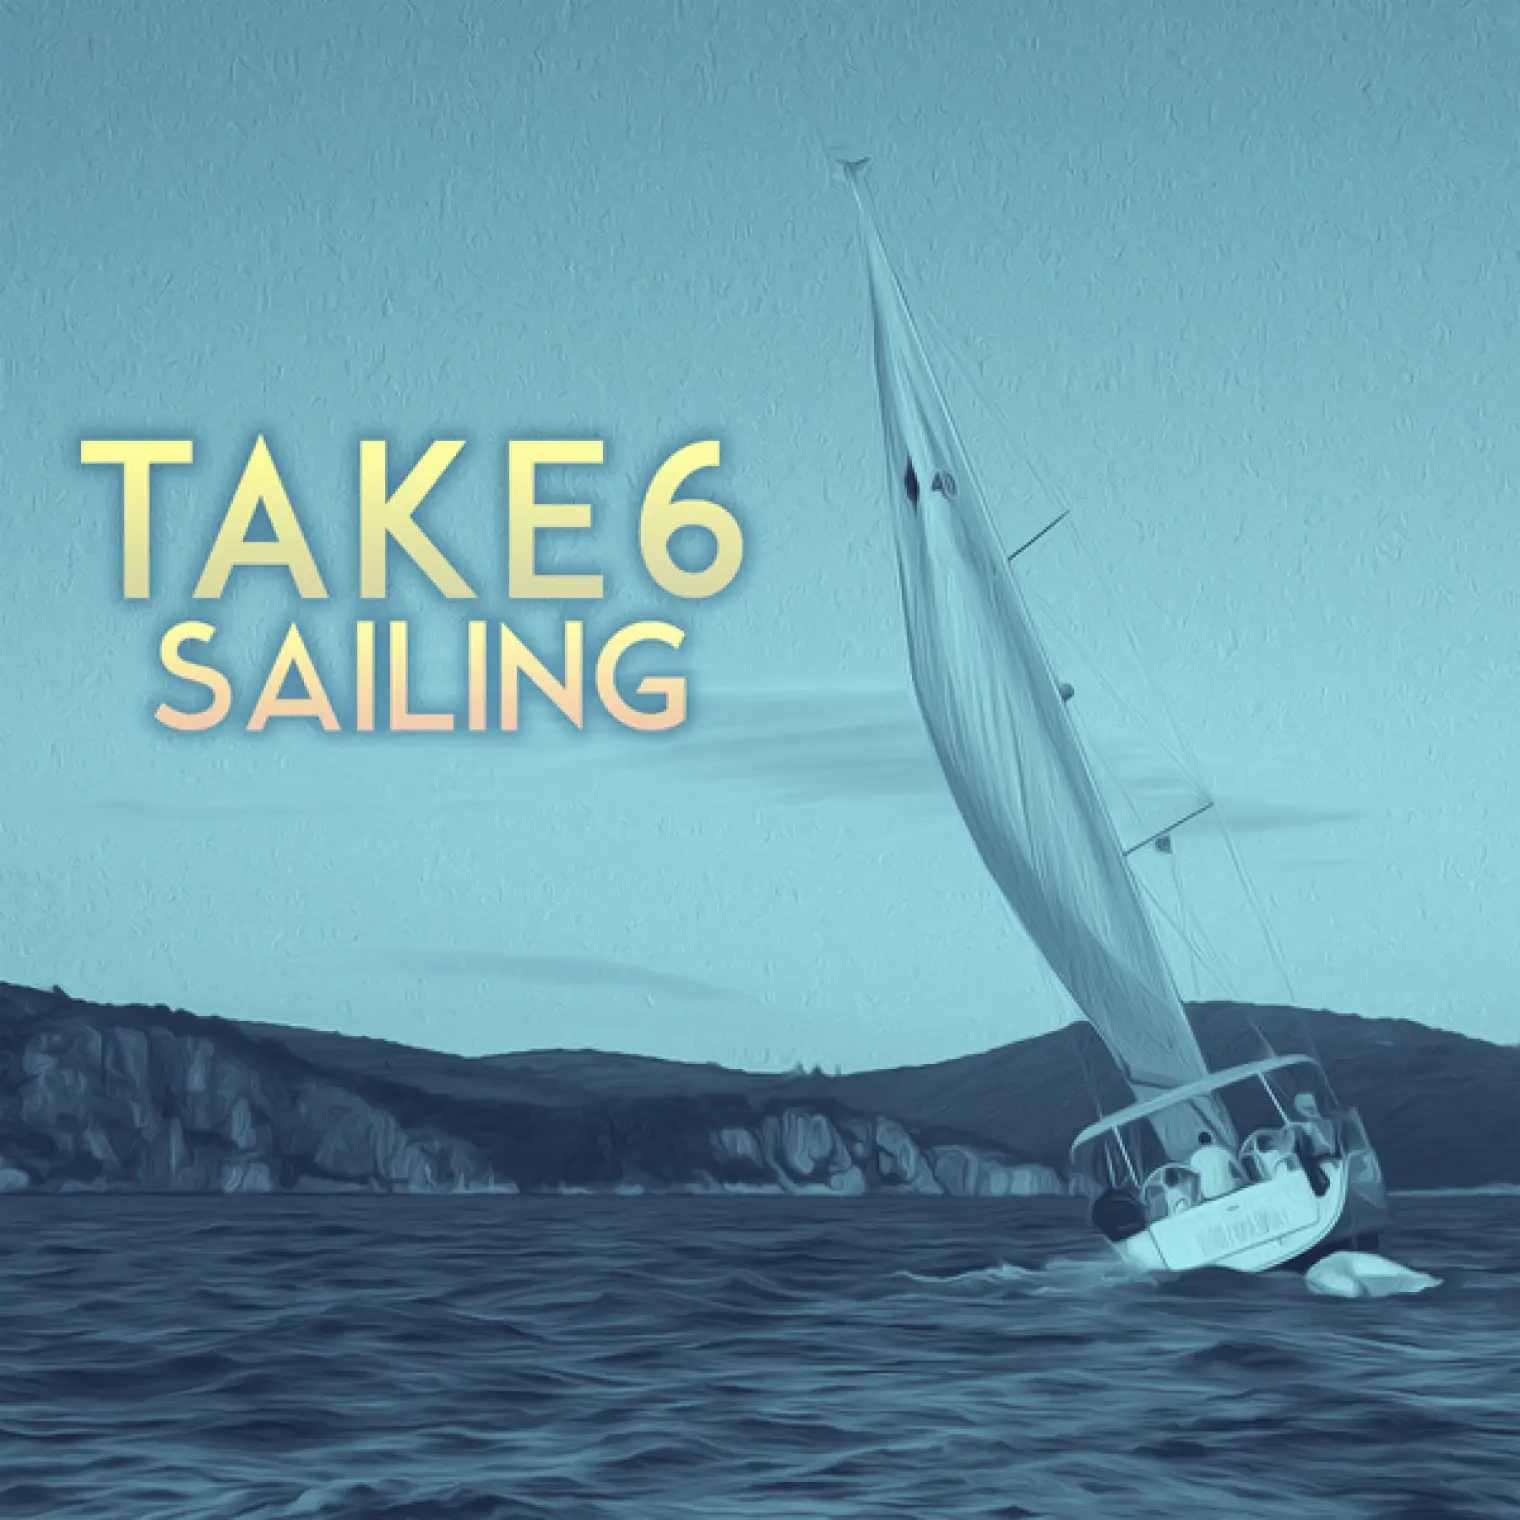 Sailing -  Take 6 